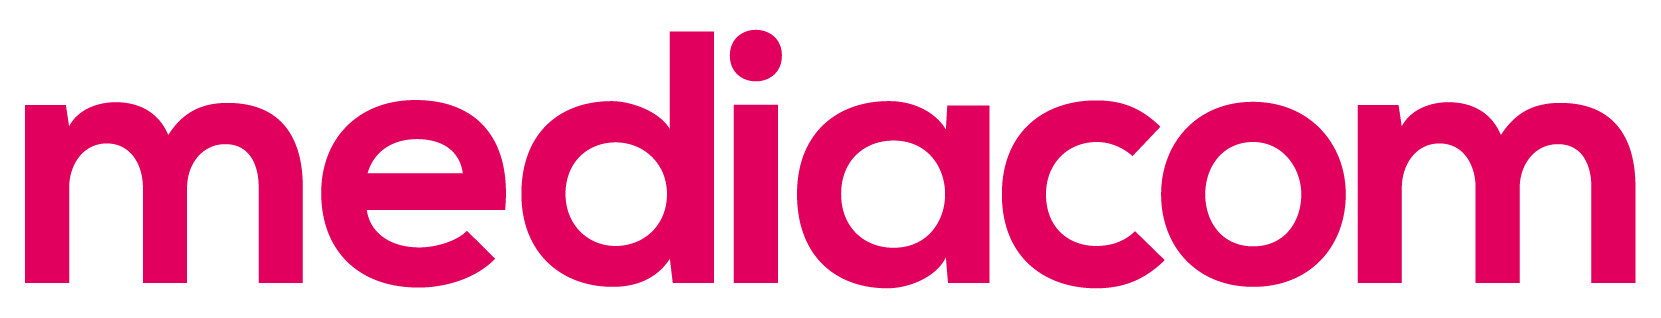 Mediacom2021_logo_pink